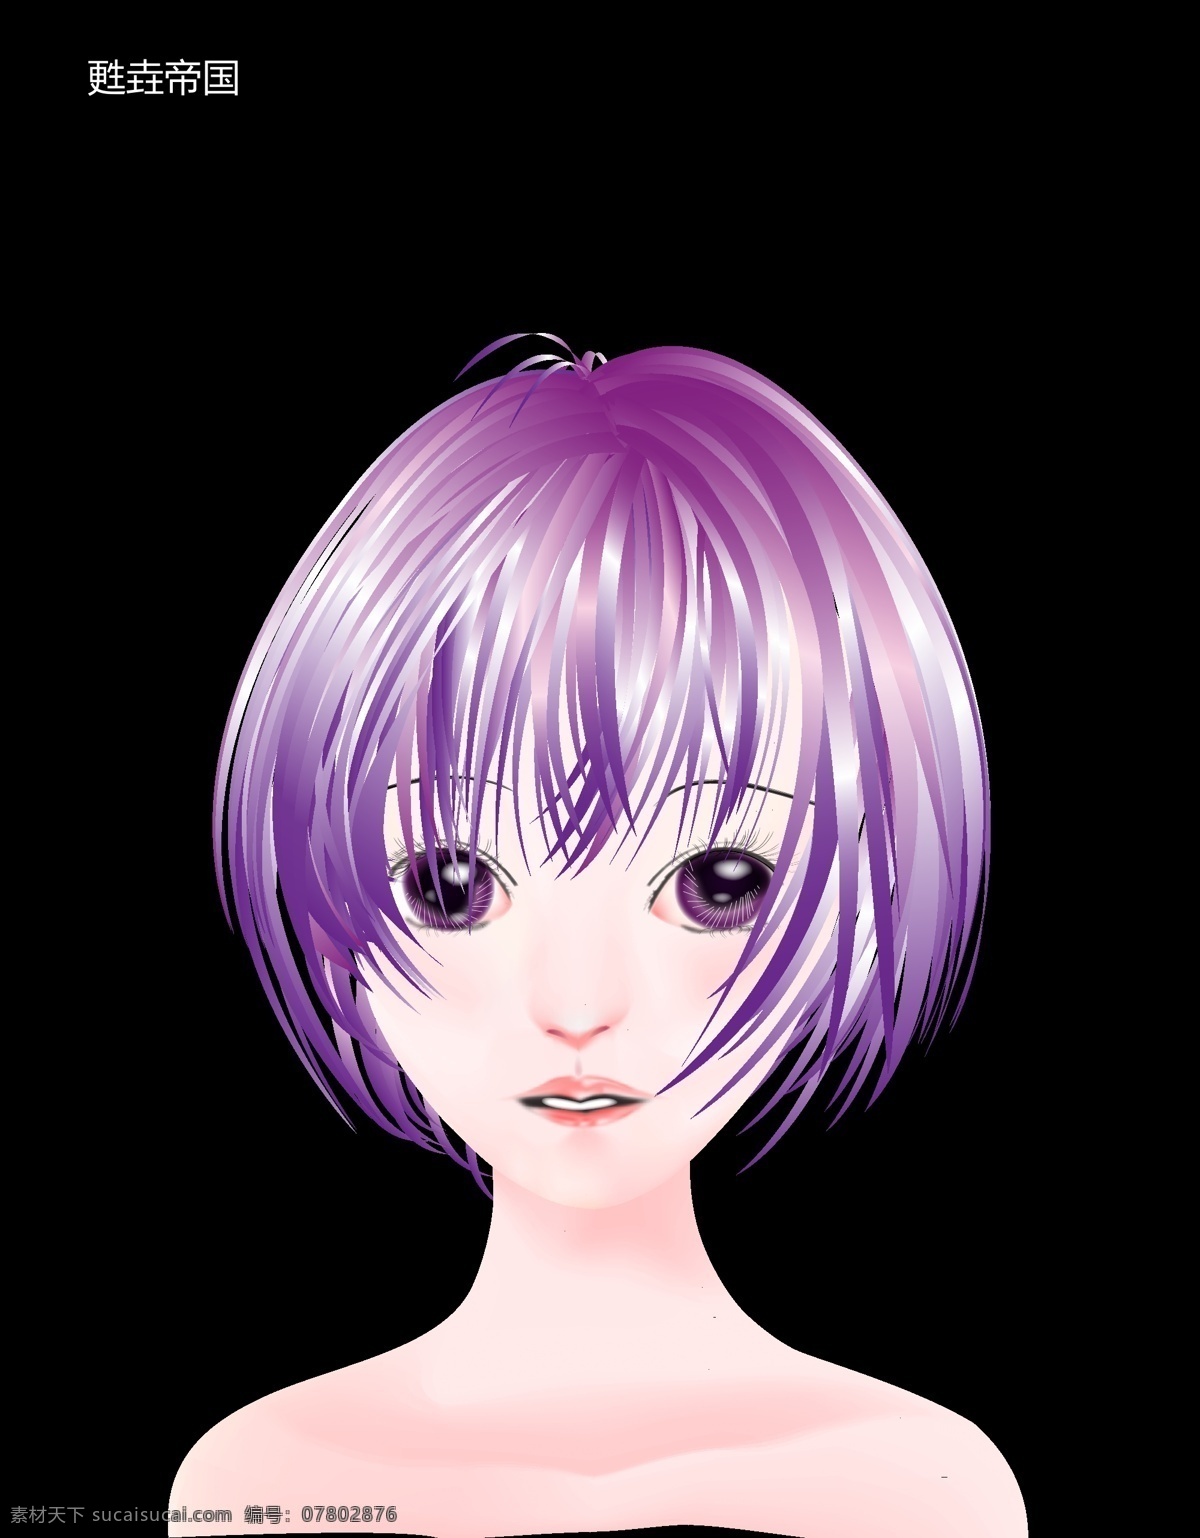 动漫少女 动漫人物设计 矢量图库 紫色头发 头像设计 妇女女性 矢量人物 矢量